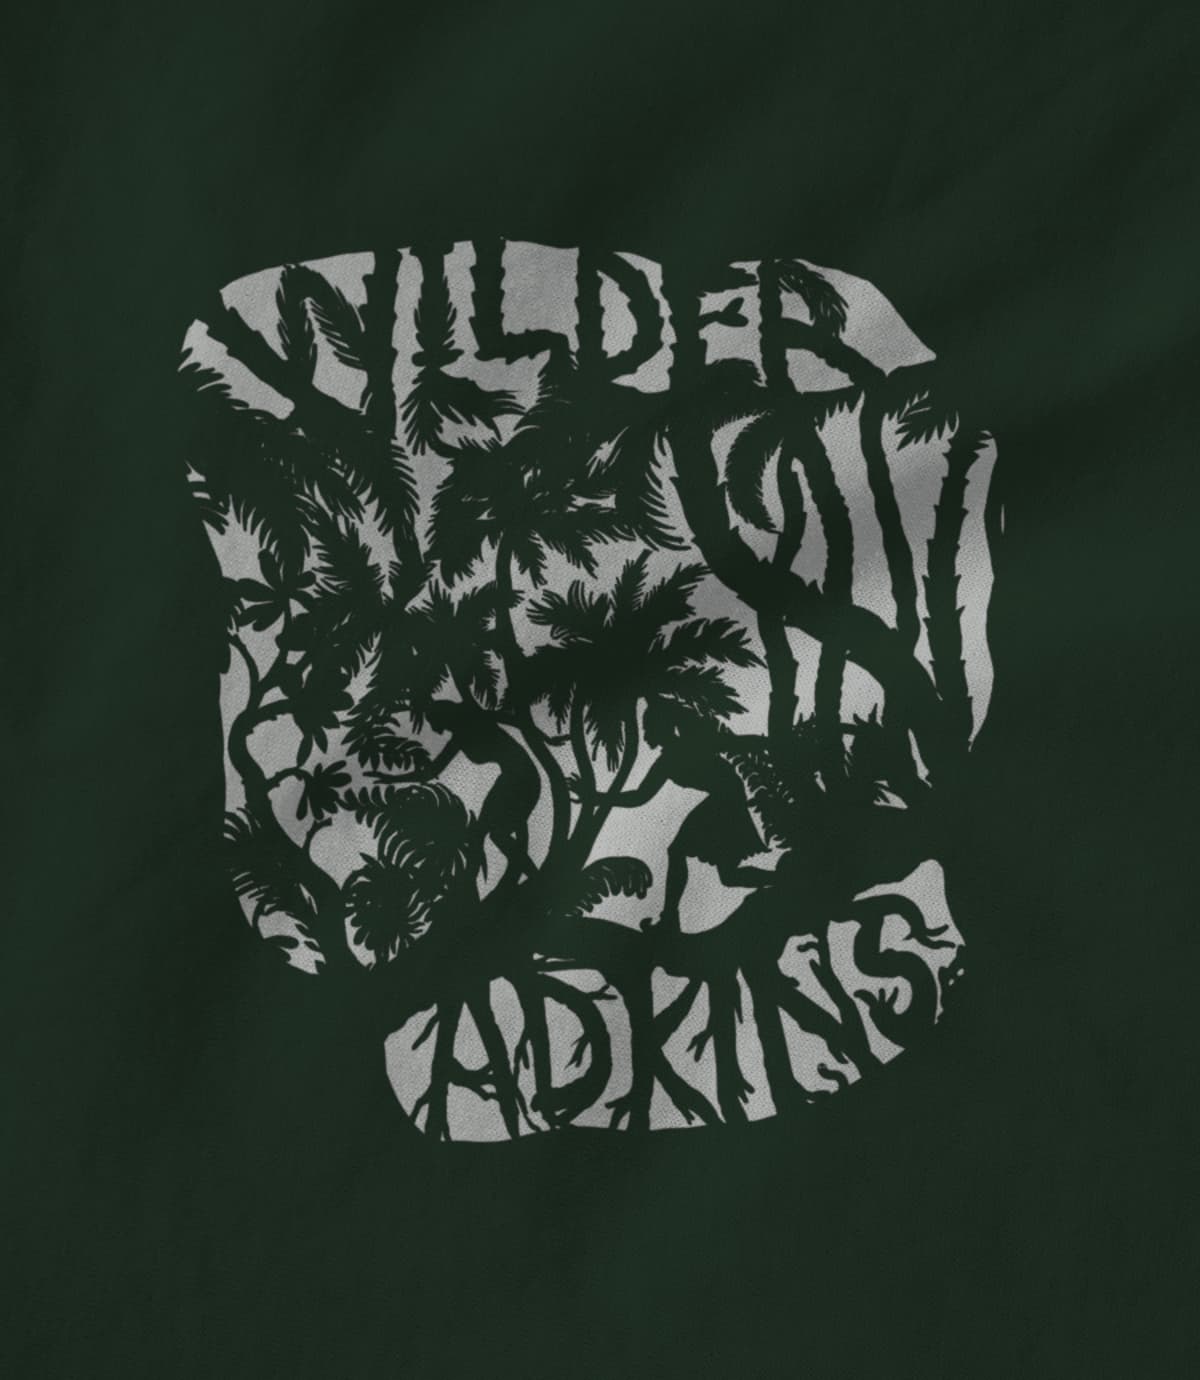 Wilder Adkins